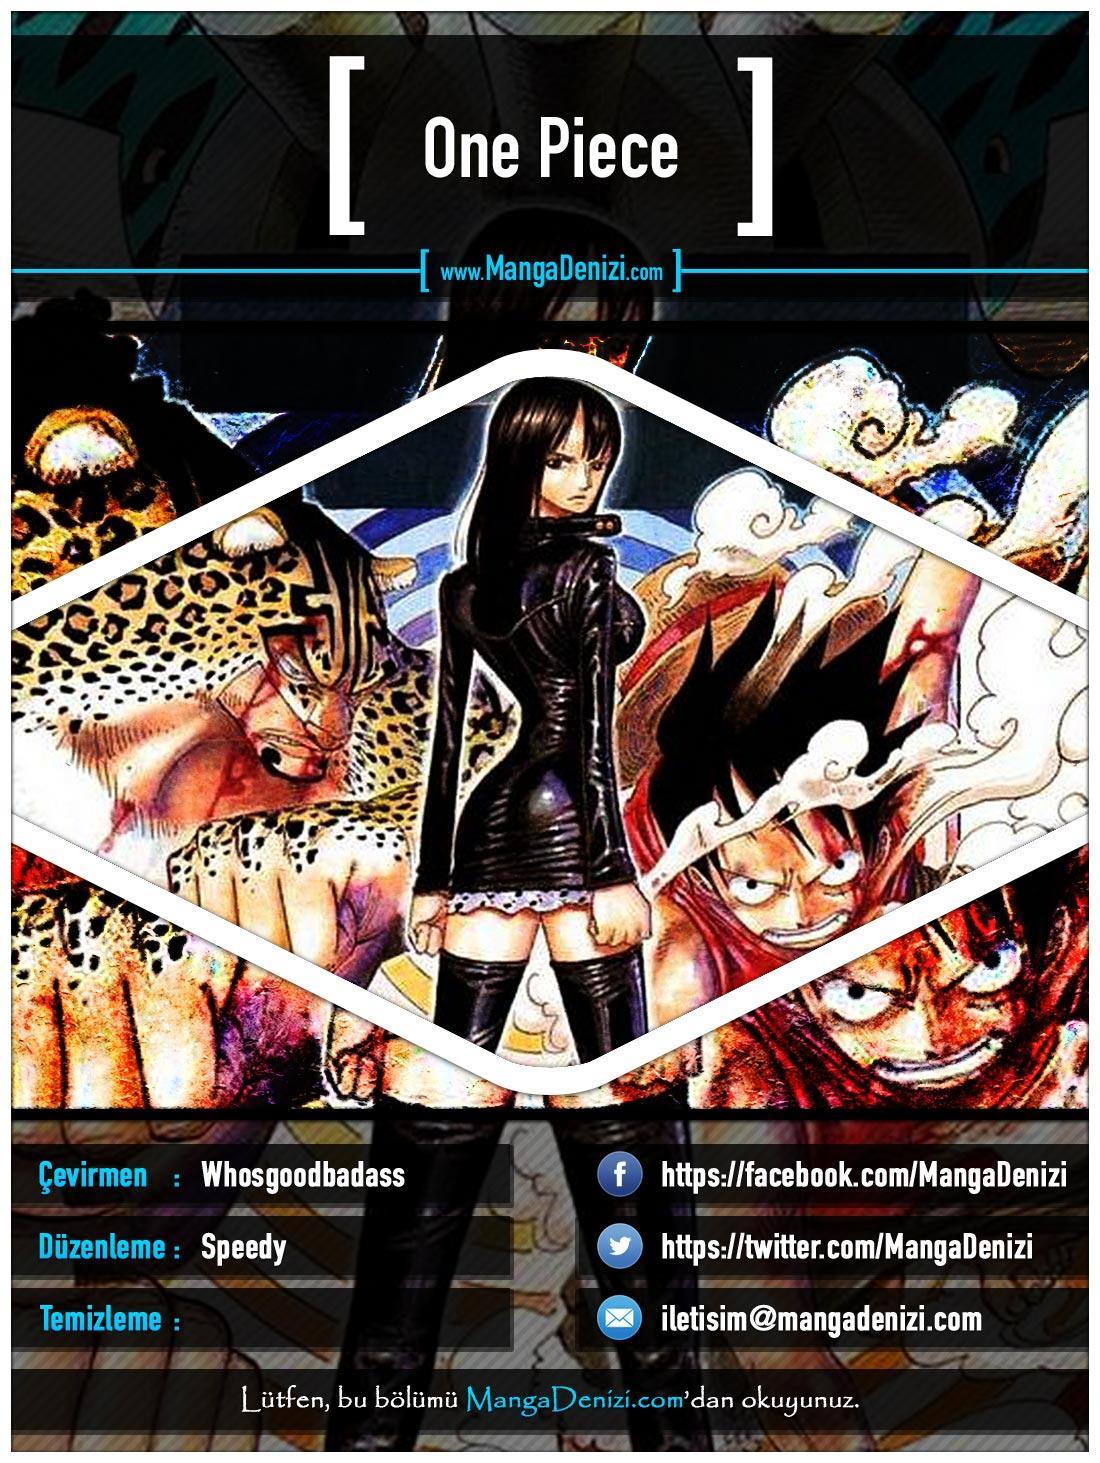 One Piece [Renkli] mangasının 0422 bölümünün 1. sayfasını okuyorsunuz.